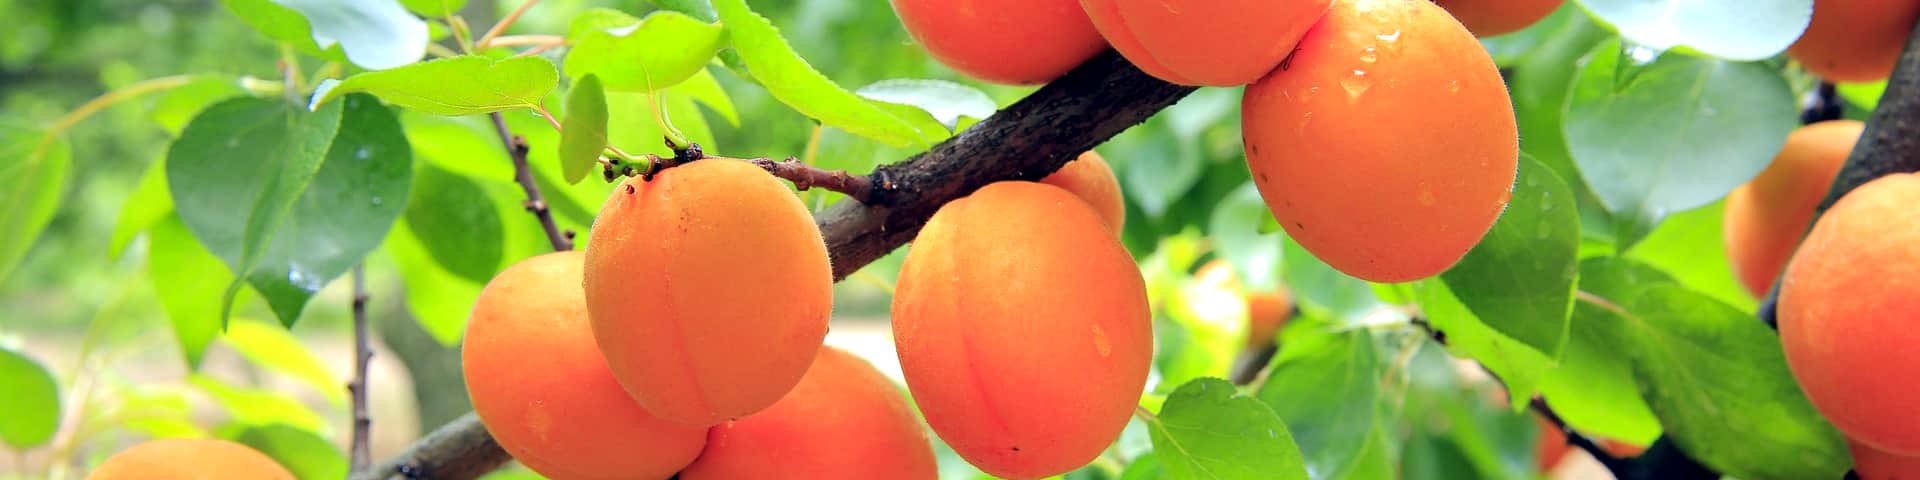 Aprikosen samt Blattwerk am Baum von veredelten Aprikosenbaum-Sorten